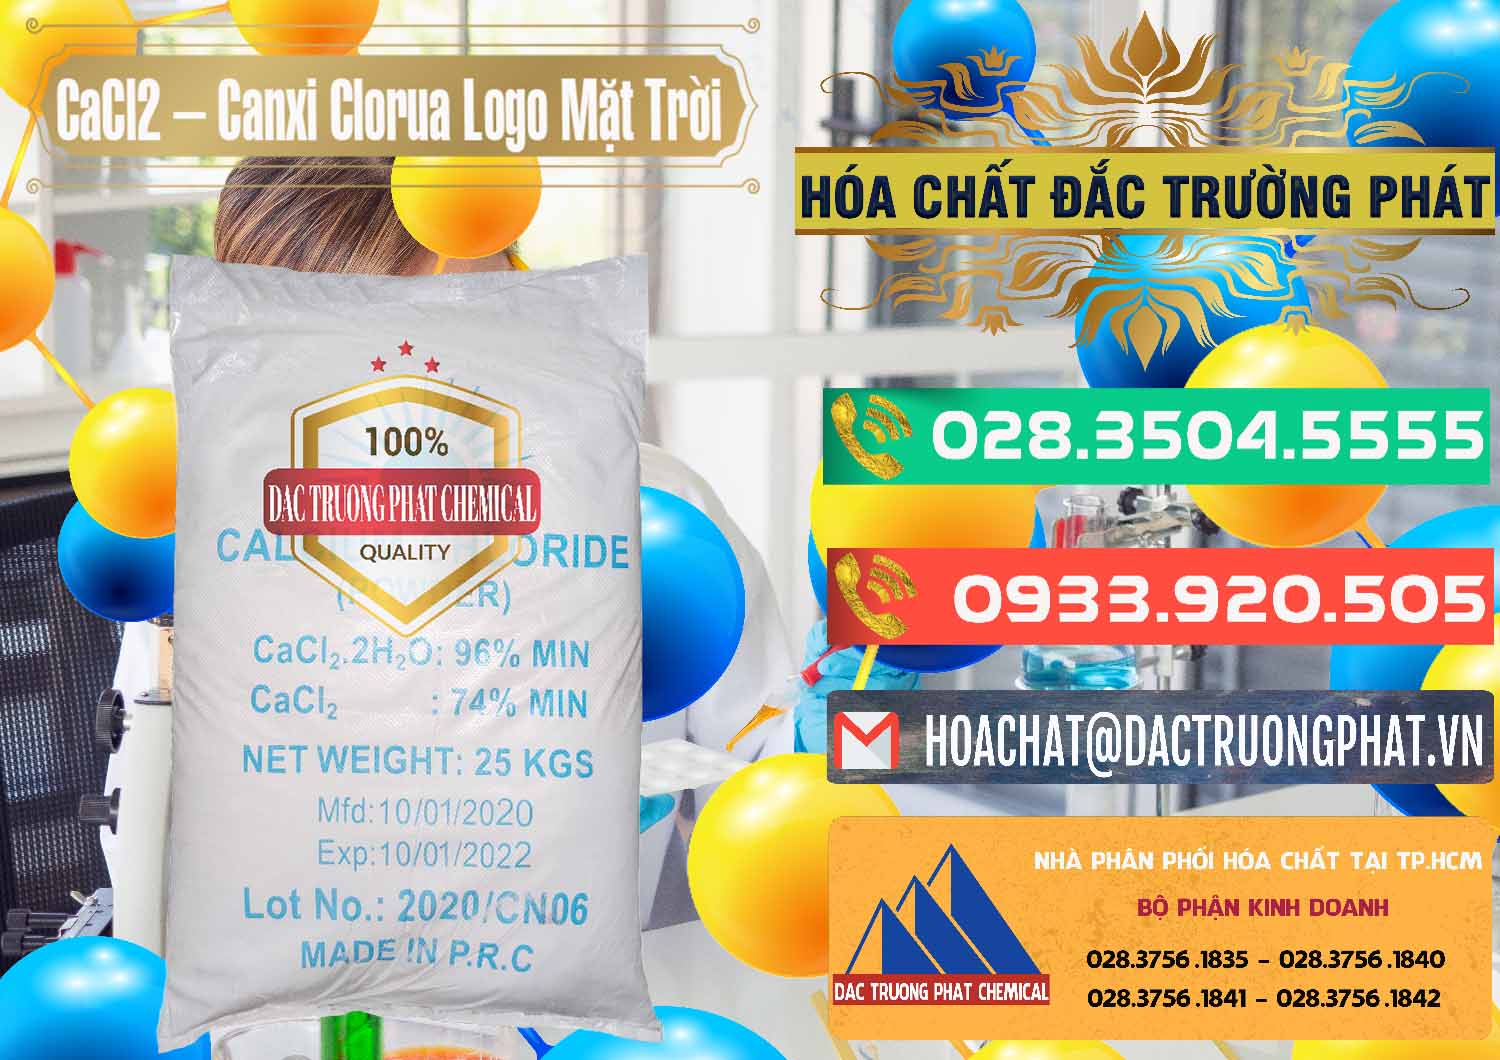 Công ty chuyên cung ứng và bán CaCl2 – Canxi Clorua 96% Logo Mặt Trời Trung Quốc China - 0041 - Công ty chuyên cung cấp - bán hóa chất tại TP.HCM - congtyhoachat.com.vn